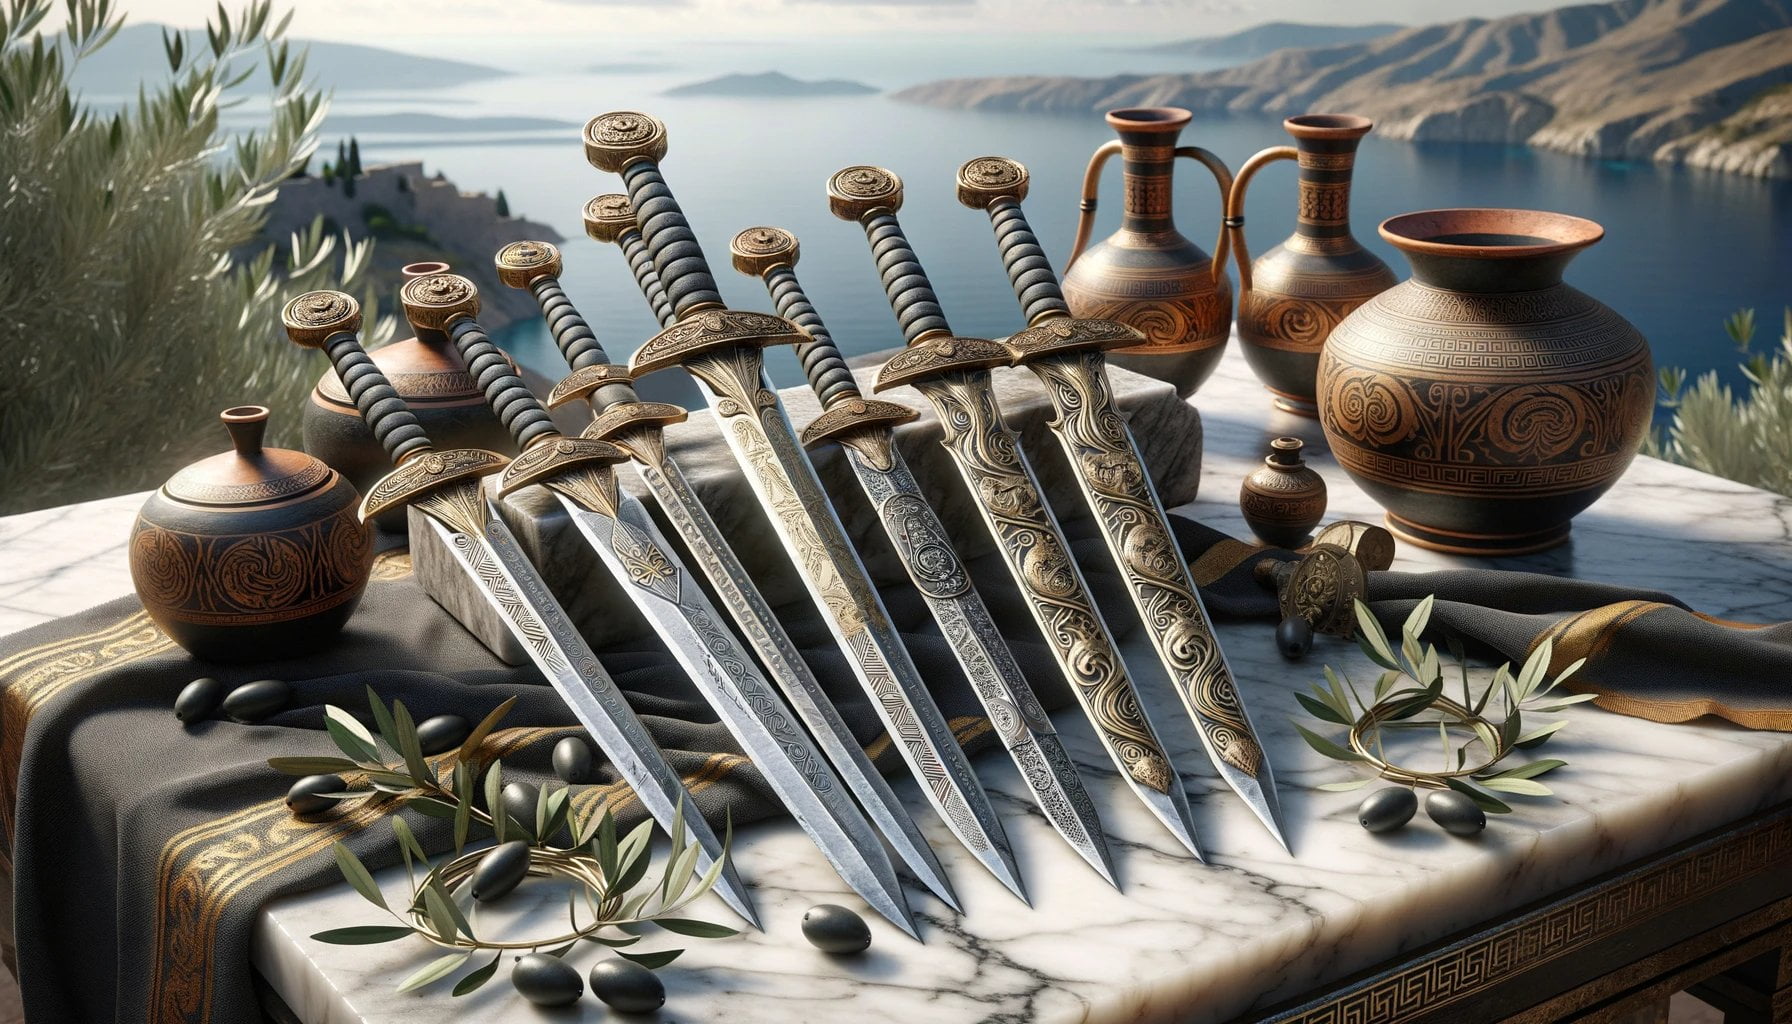 swords of ancient greece